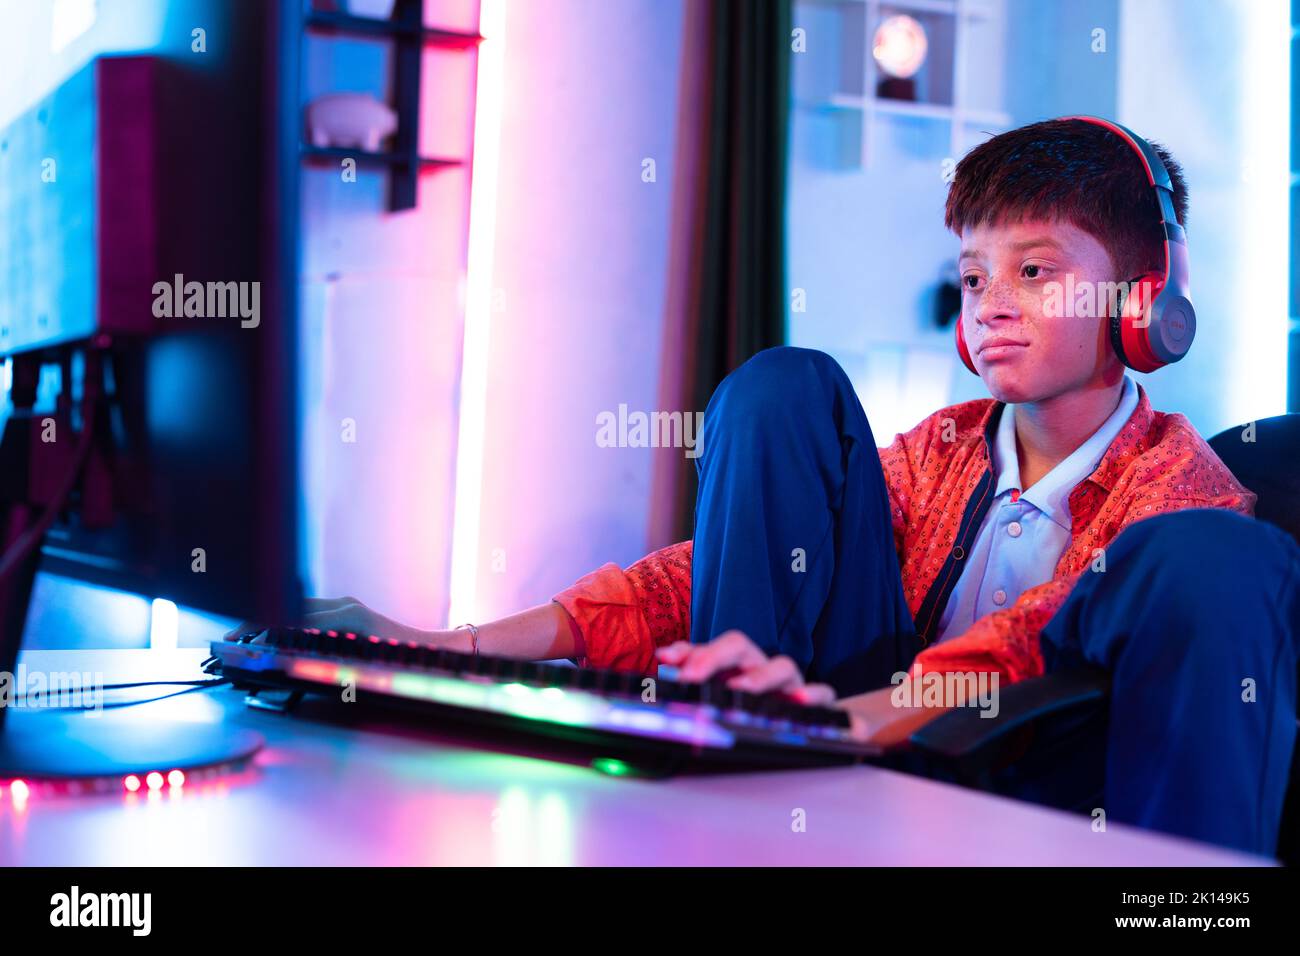 Aburrido niño adolescente soñoliento joven mientras juega un videojuego en línea en el ordenador en casa - concepto de pereza, insomnio y soledad. Foto de stock